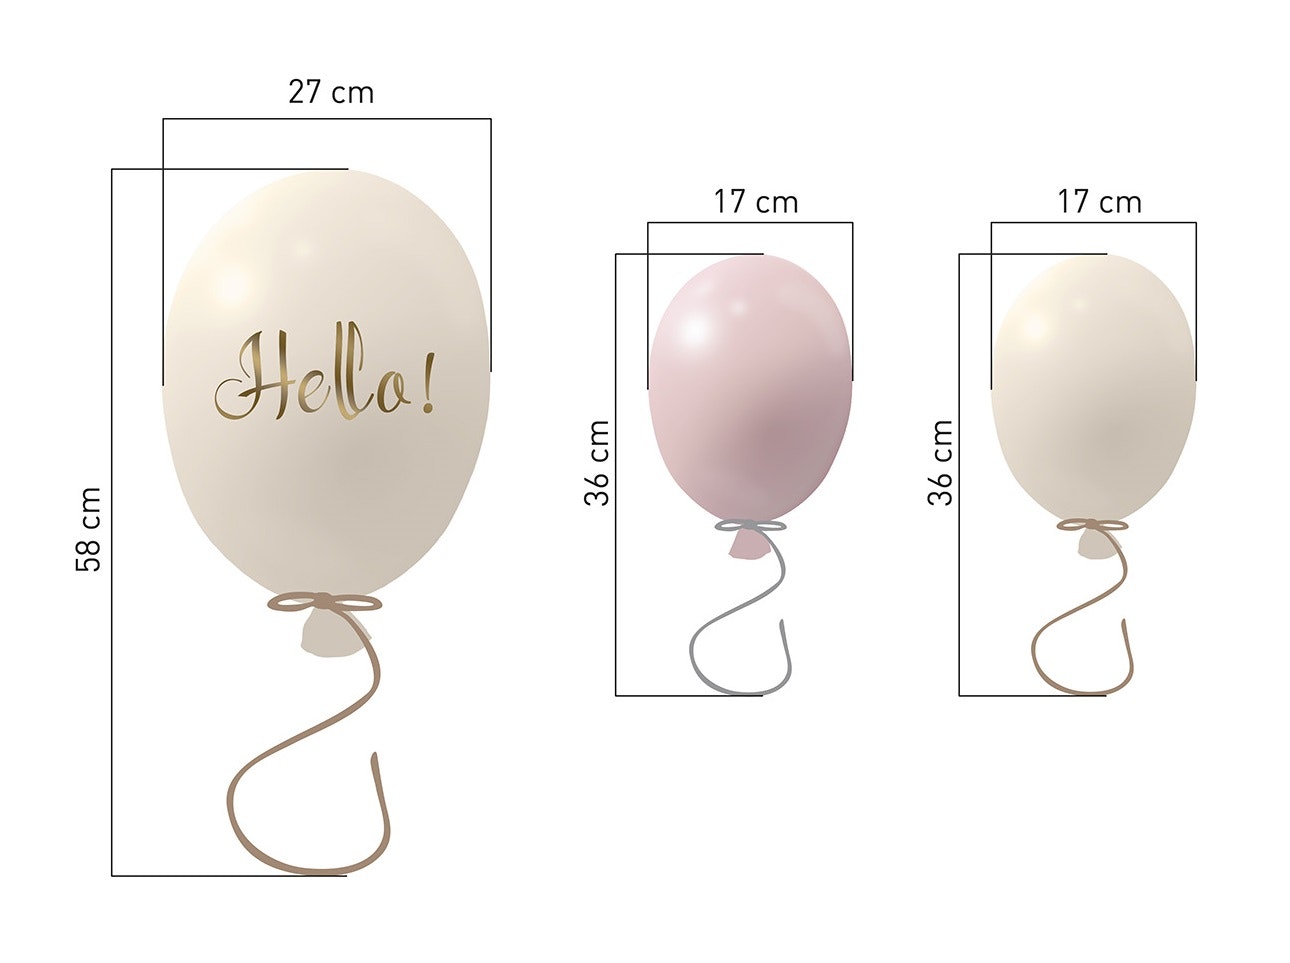 Wallsticker festballoner 3 stk, rose cream